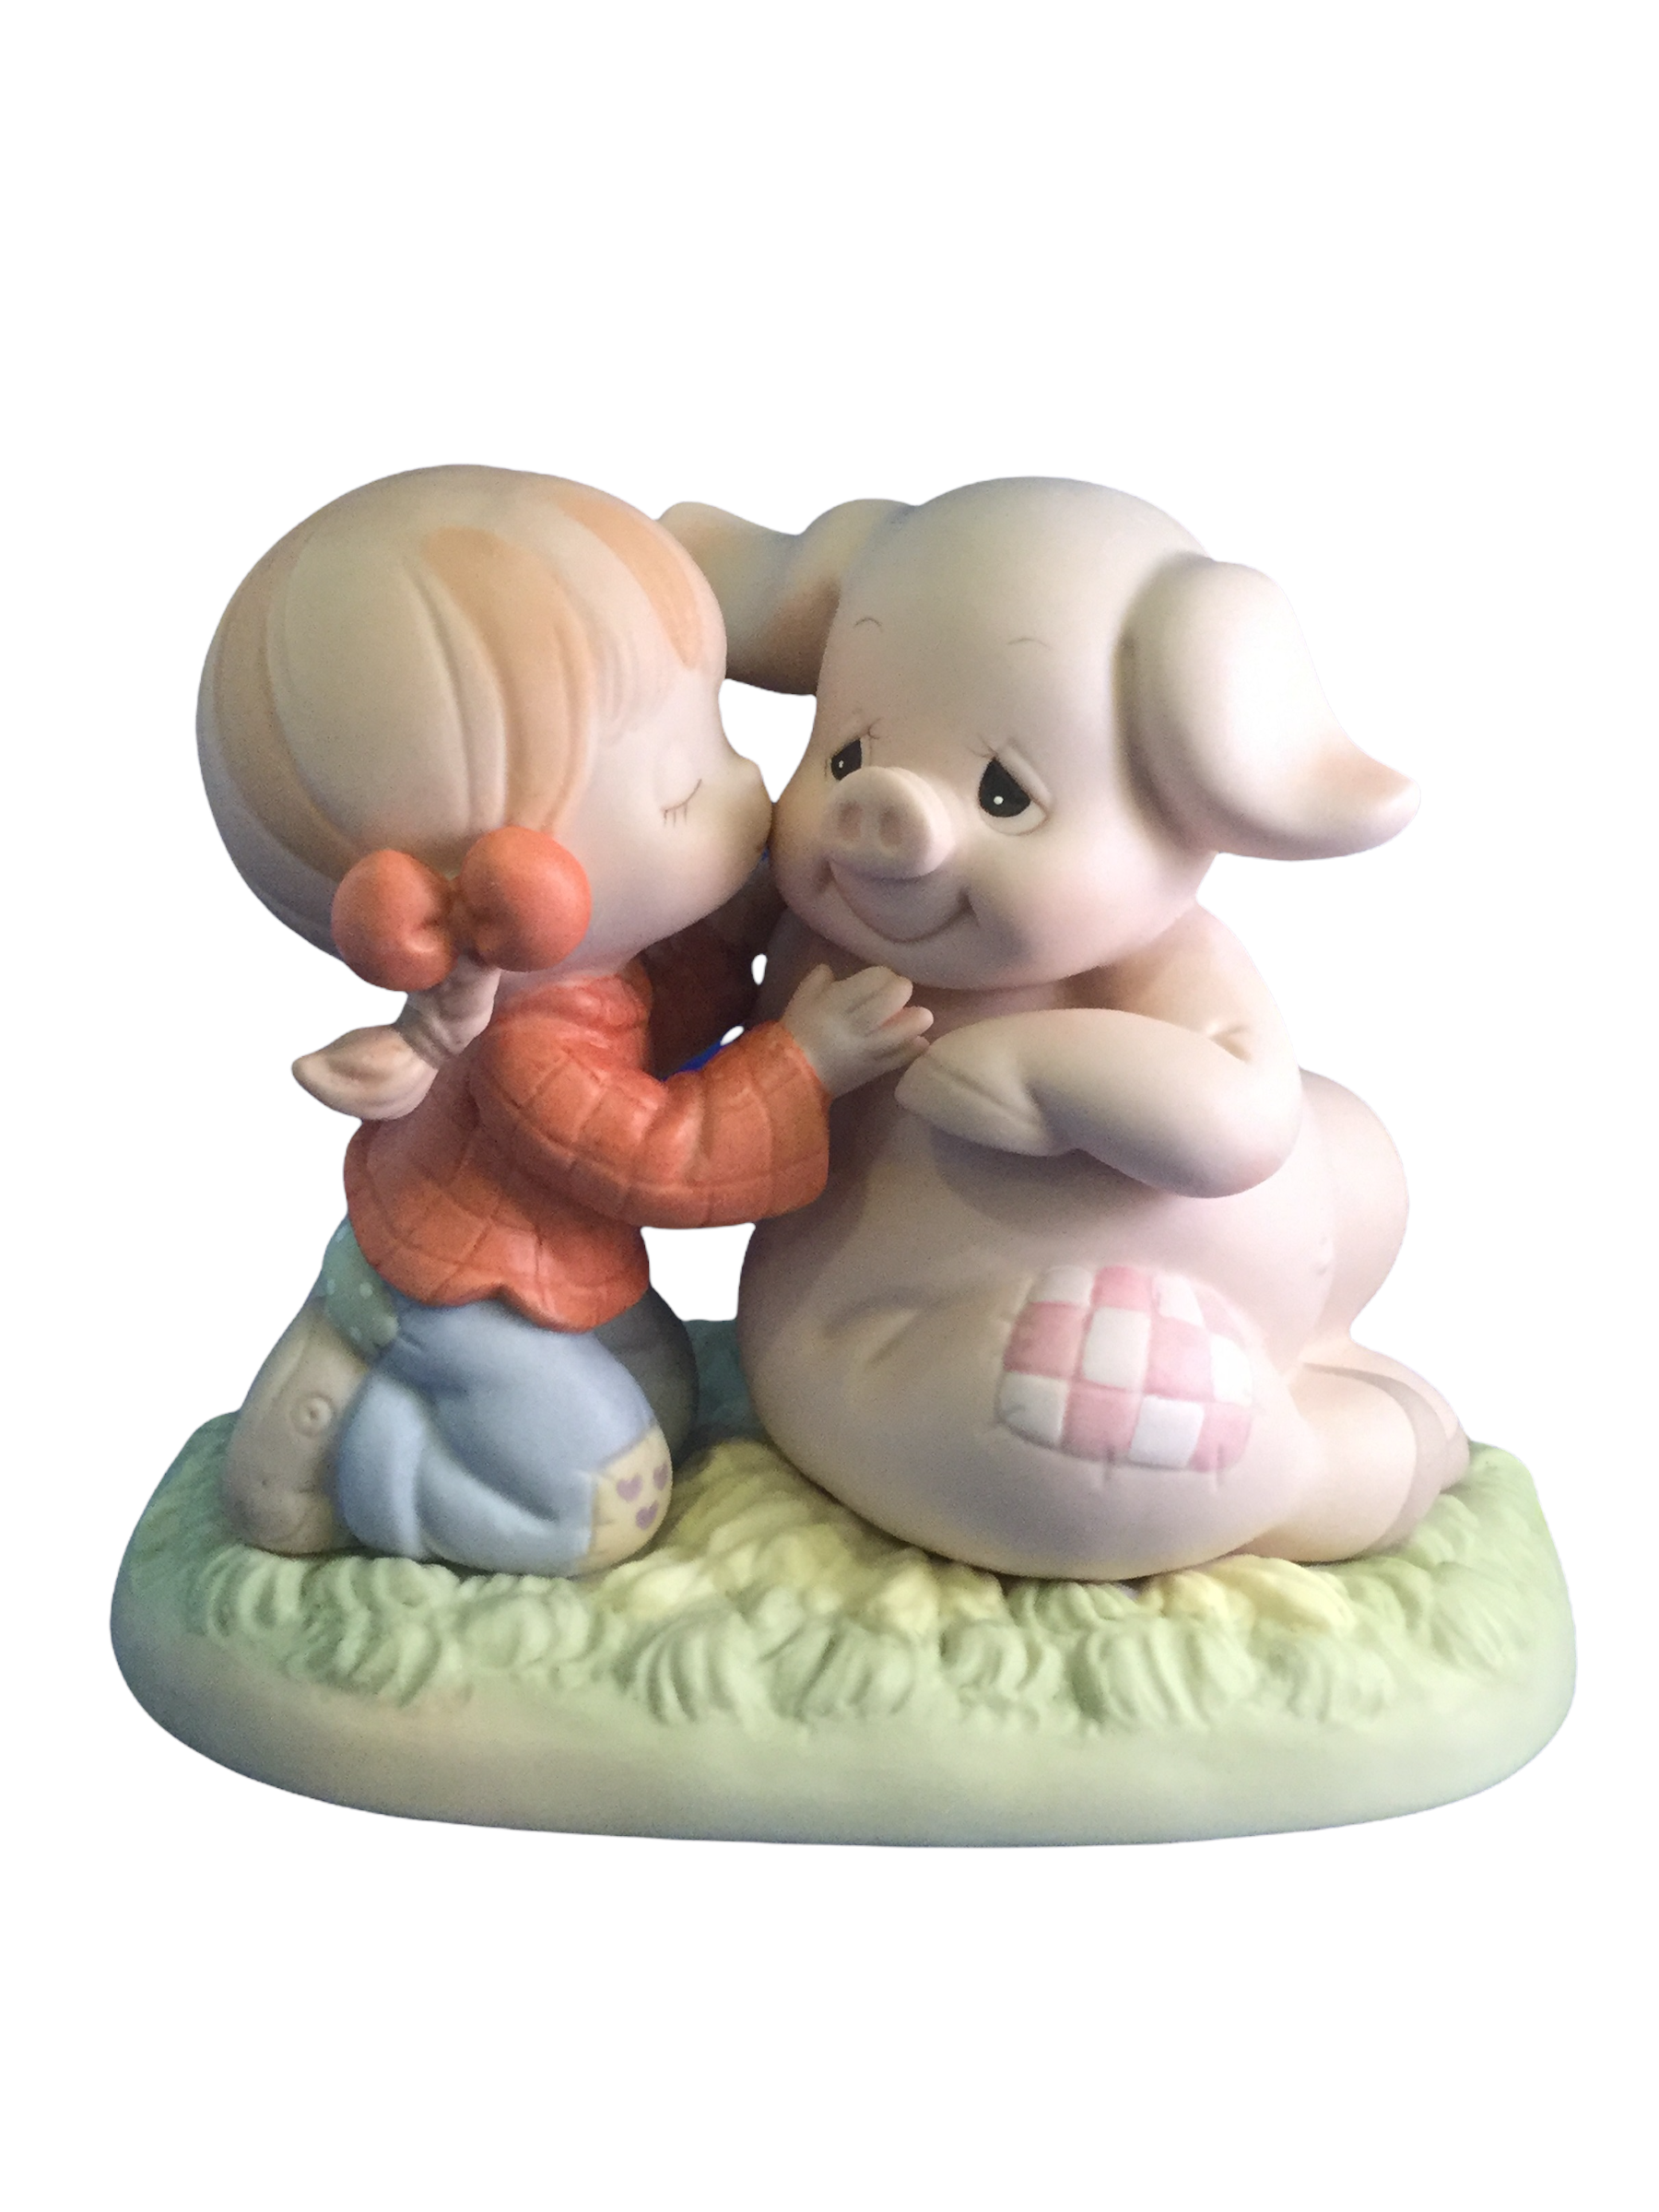 Hogs And Kisses - Precious Moment Figurine